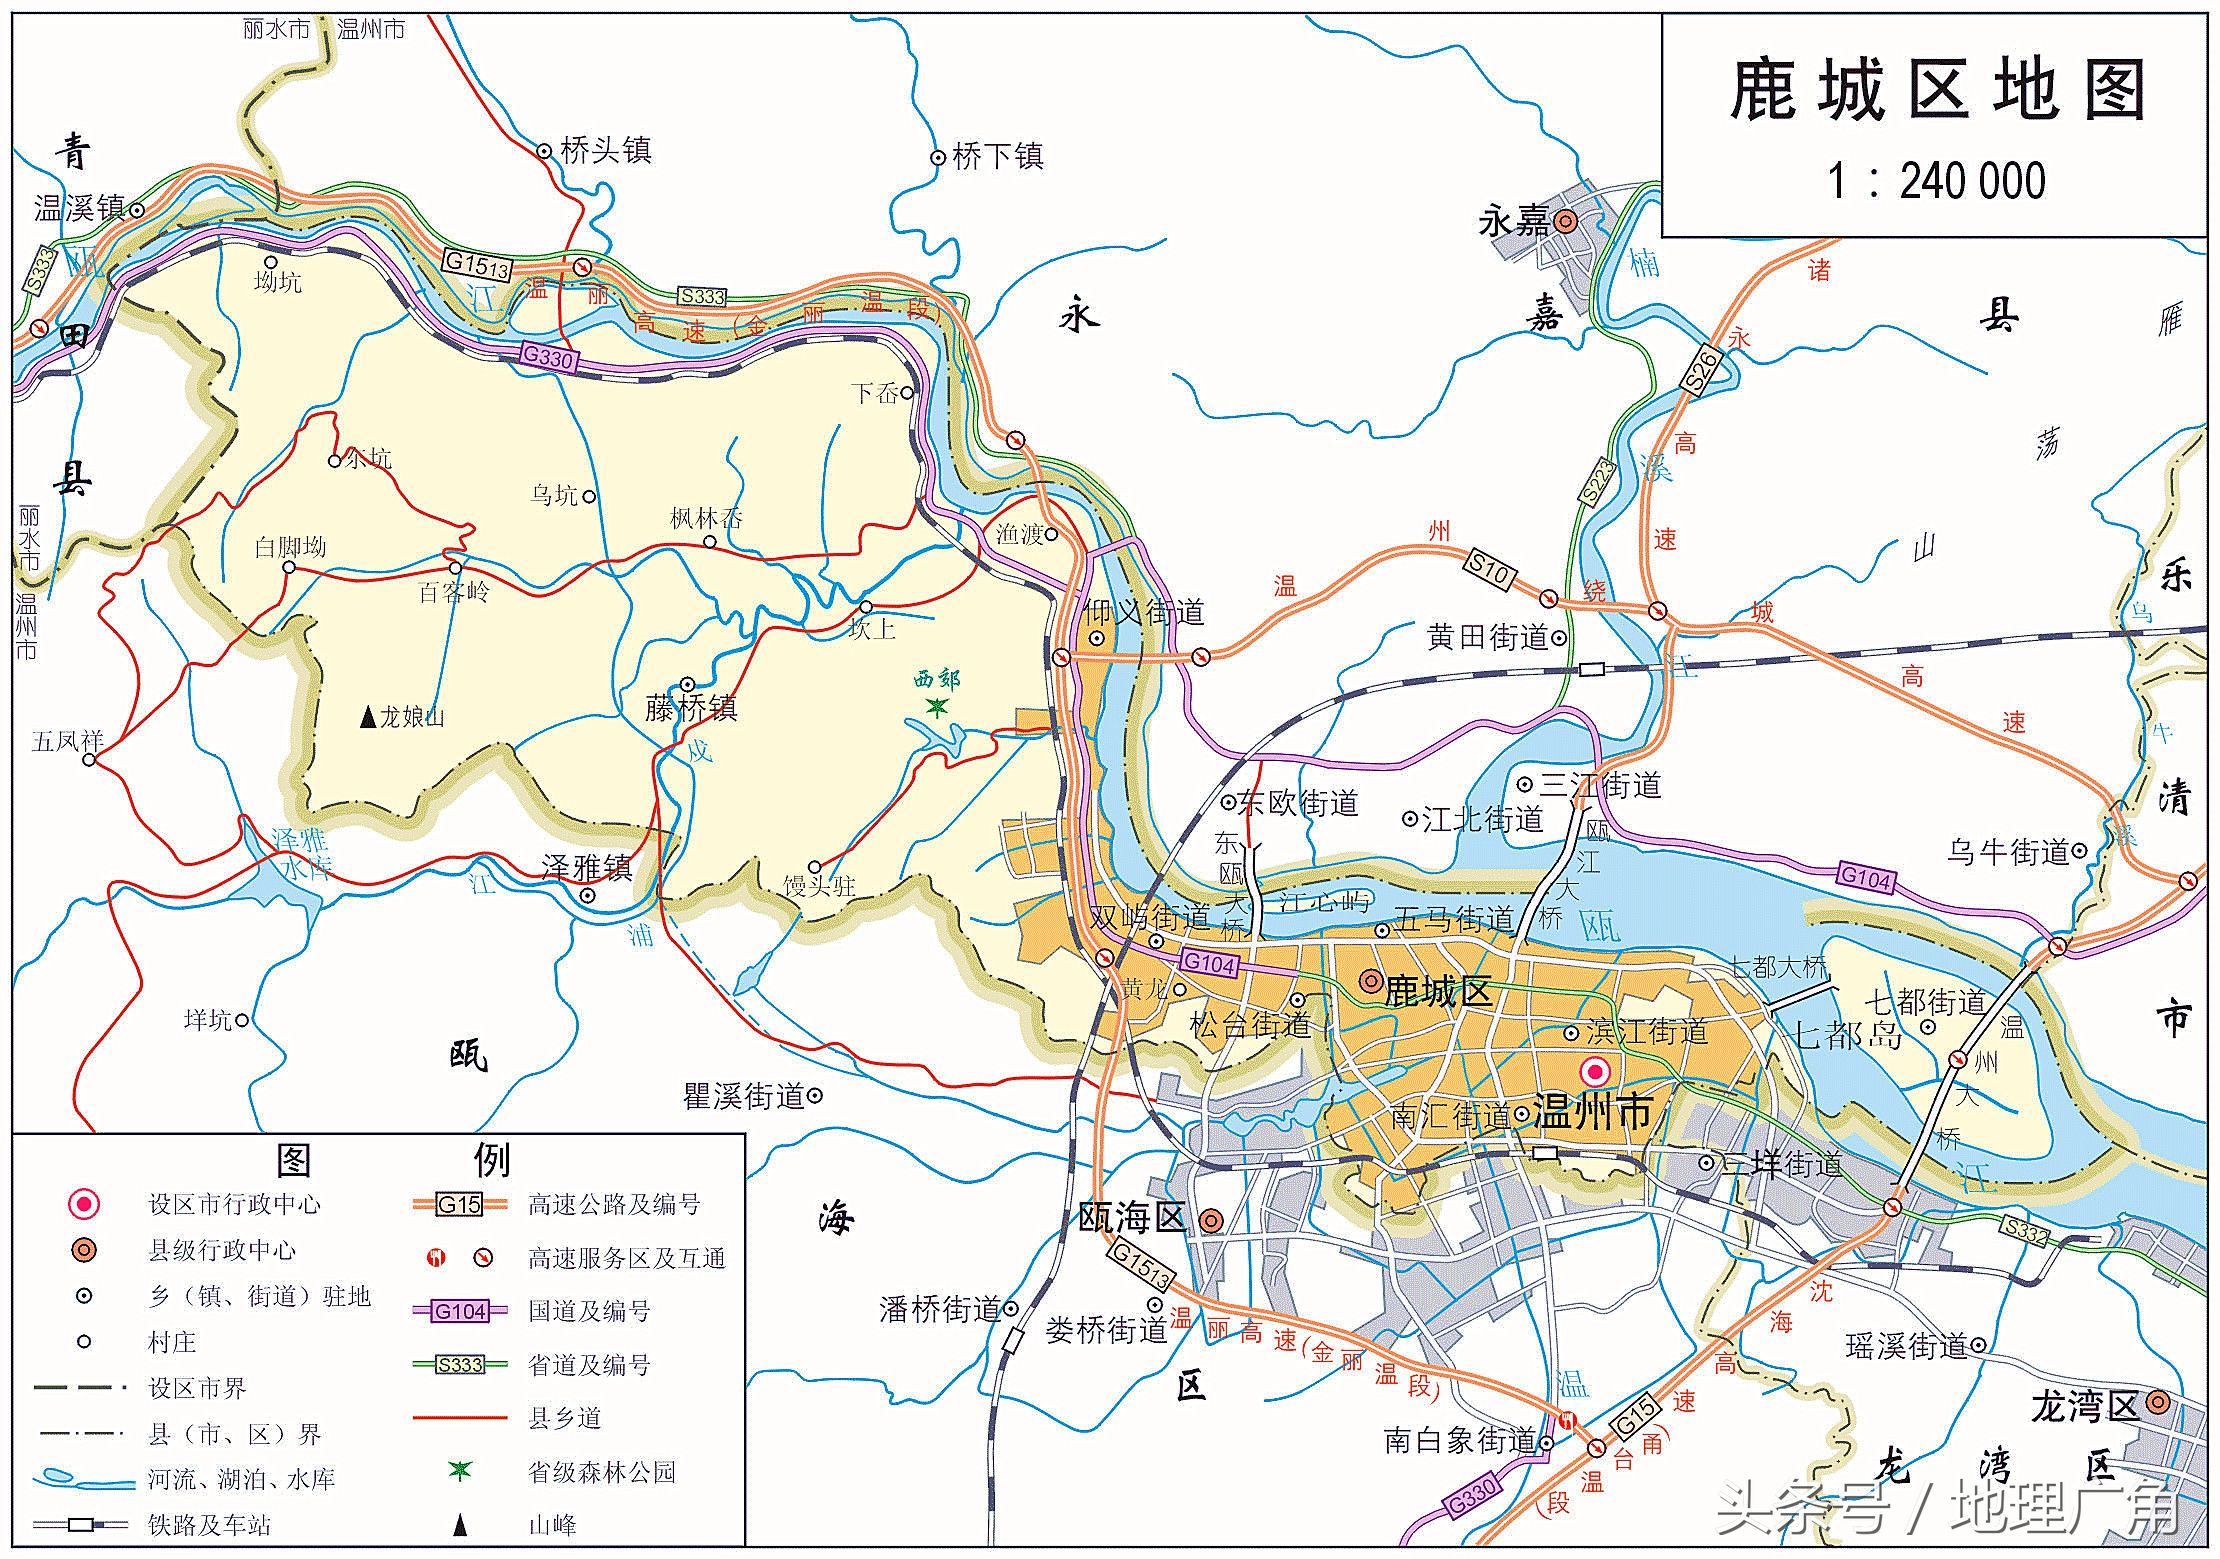 温州市行政区域划分地图